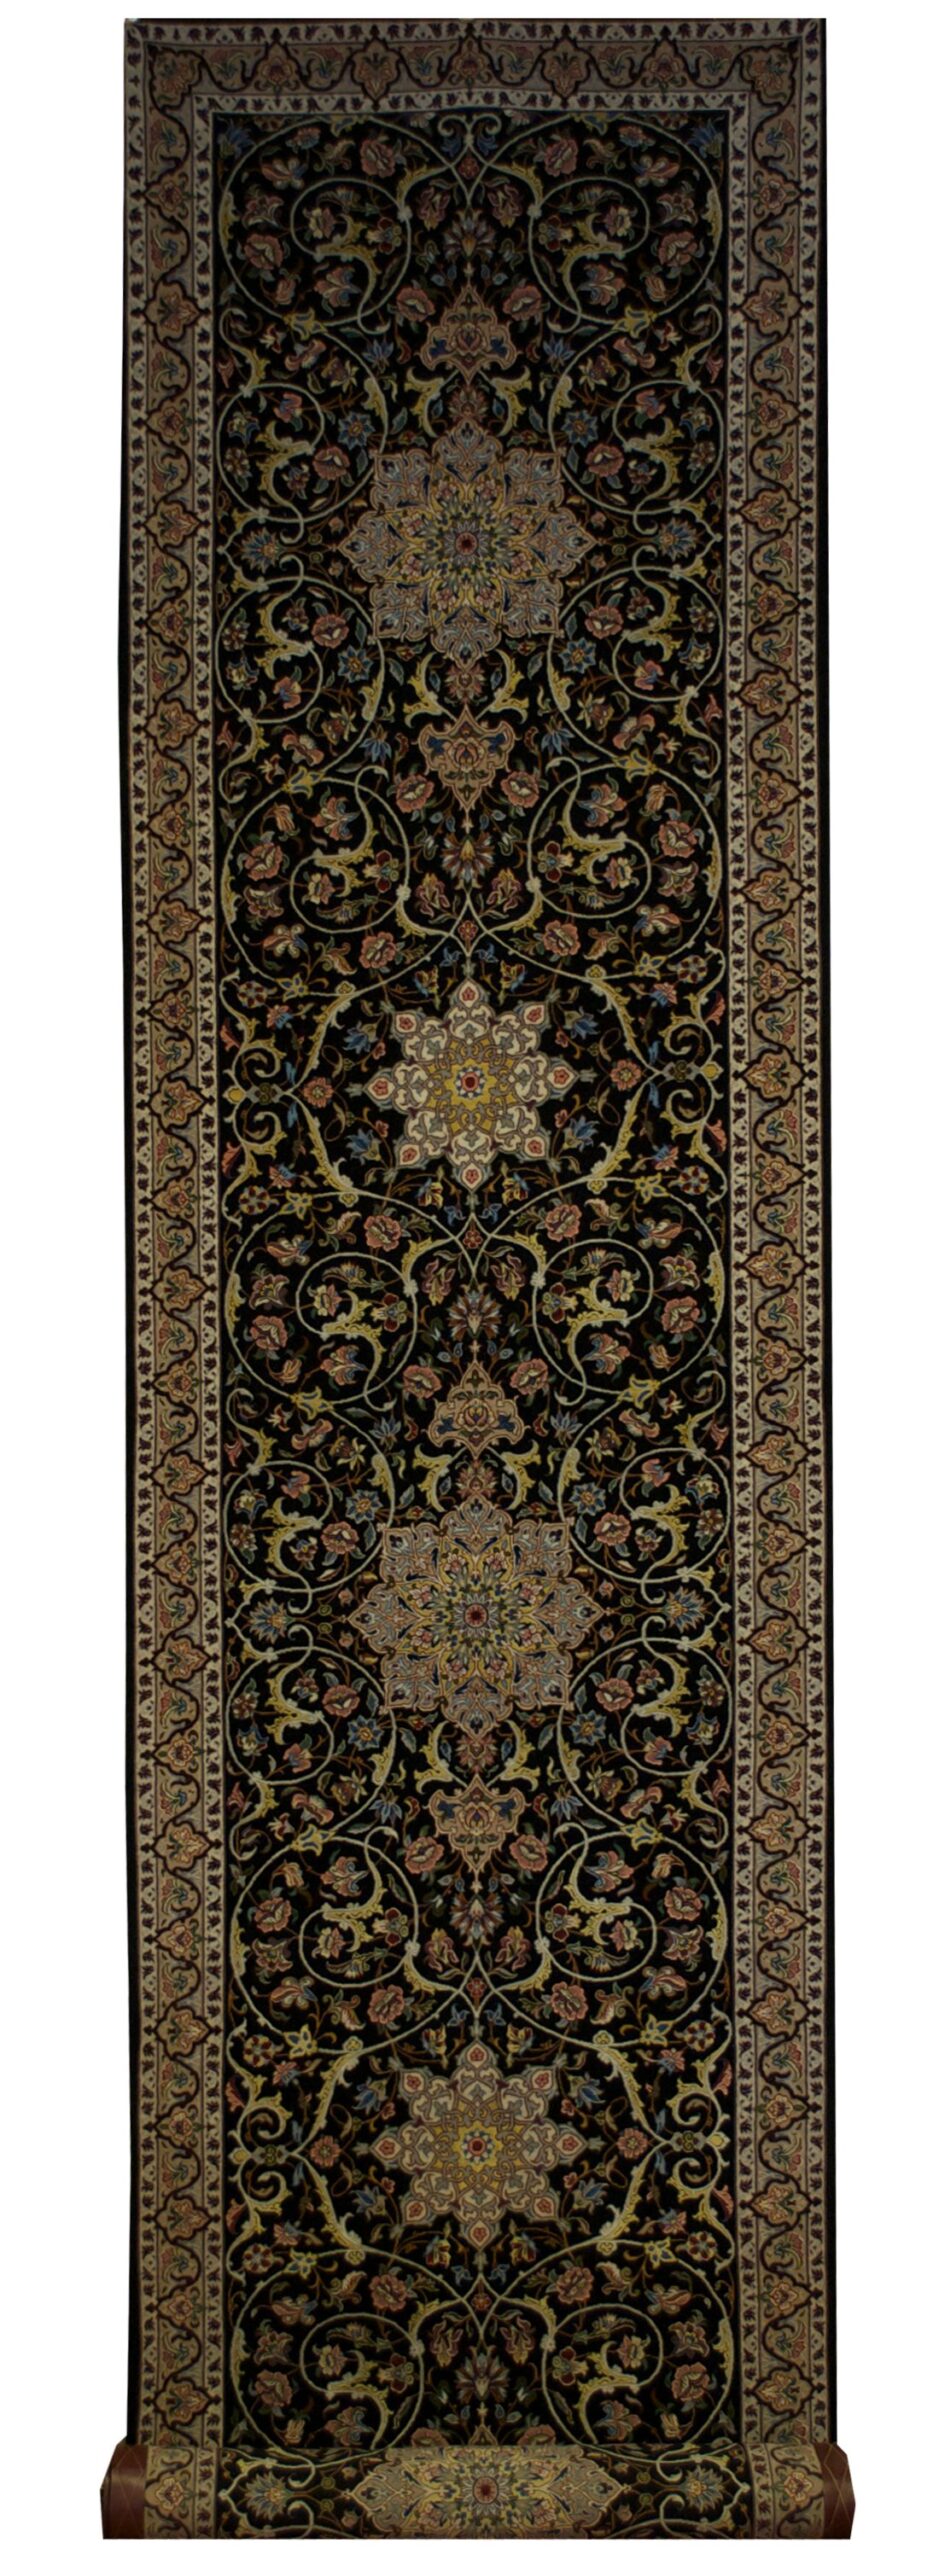 Persian Esfahan 2' 10" x 12' 6" - Shabahang Royal Carpet